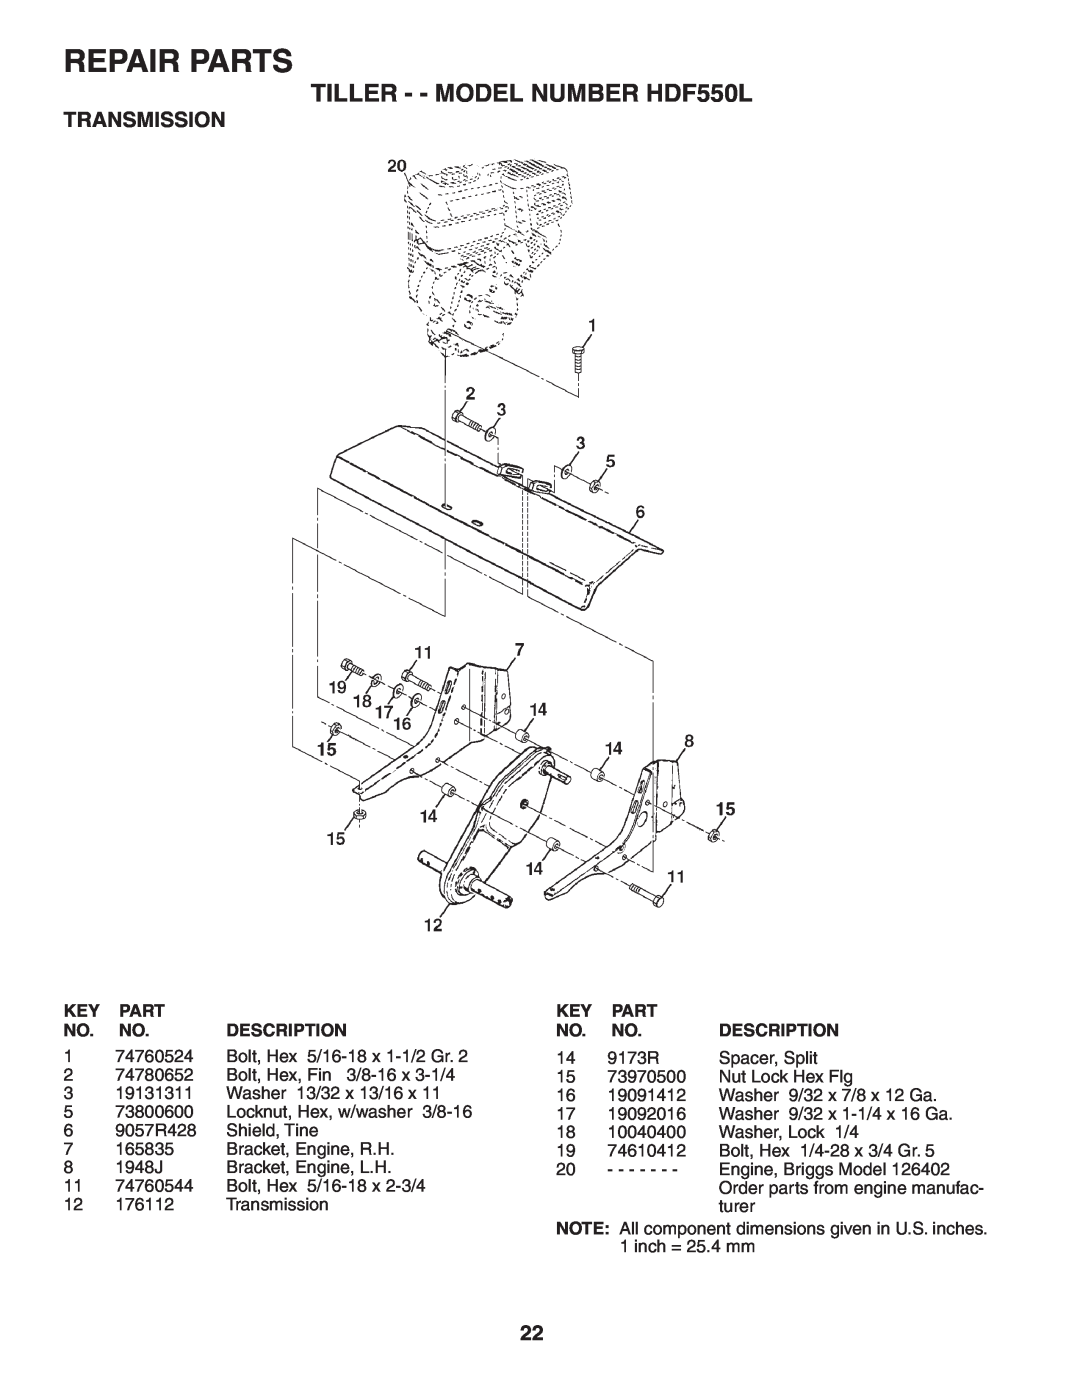 Poulan owner manual 9173R, Spacer, Split, Repair Parts, TILLER - - MODEL NUMBER HDF550L, Transmission, Description 